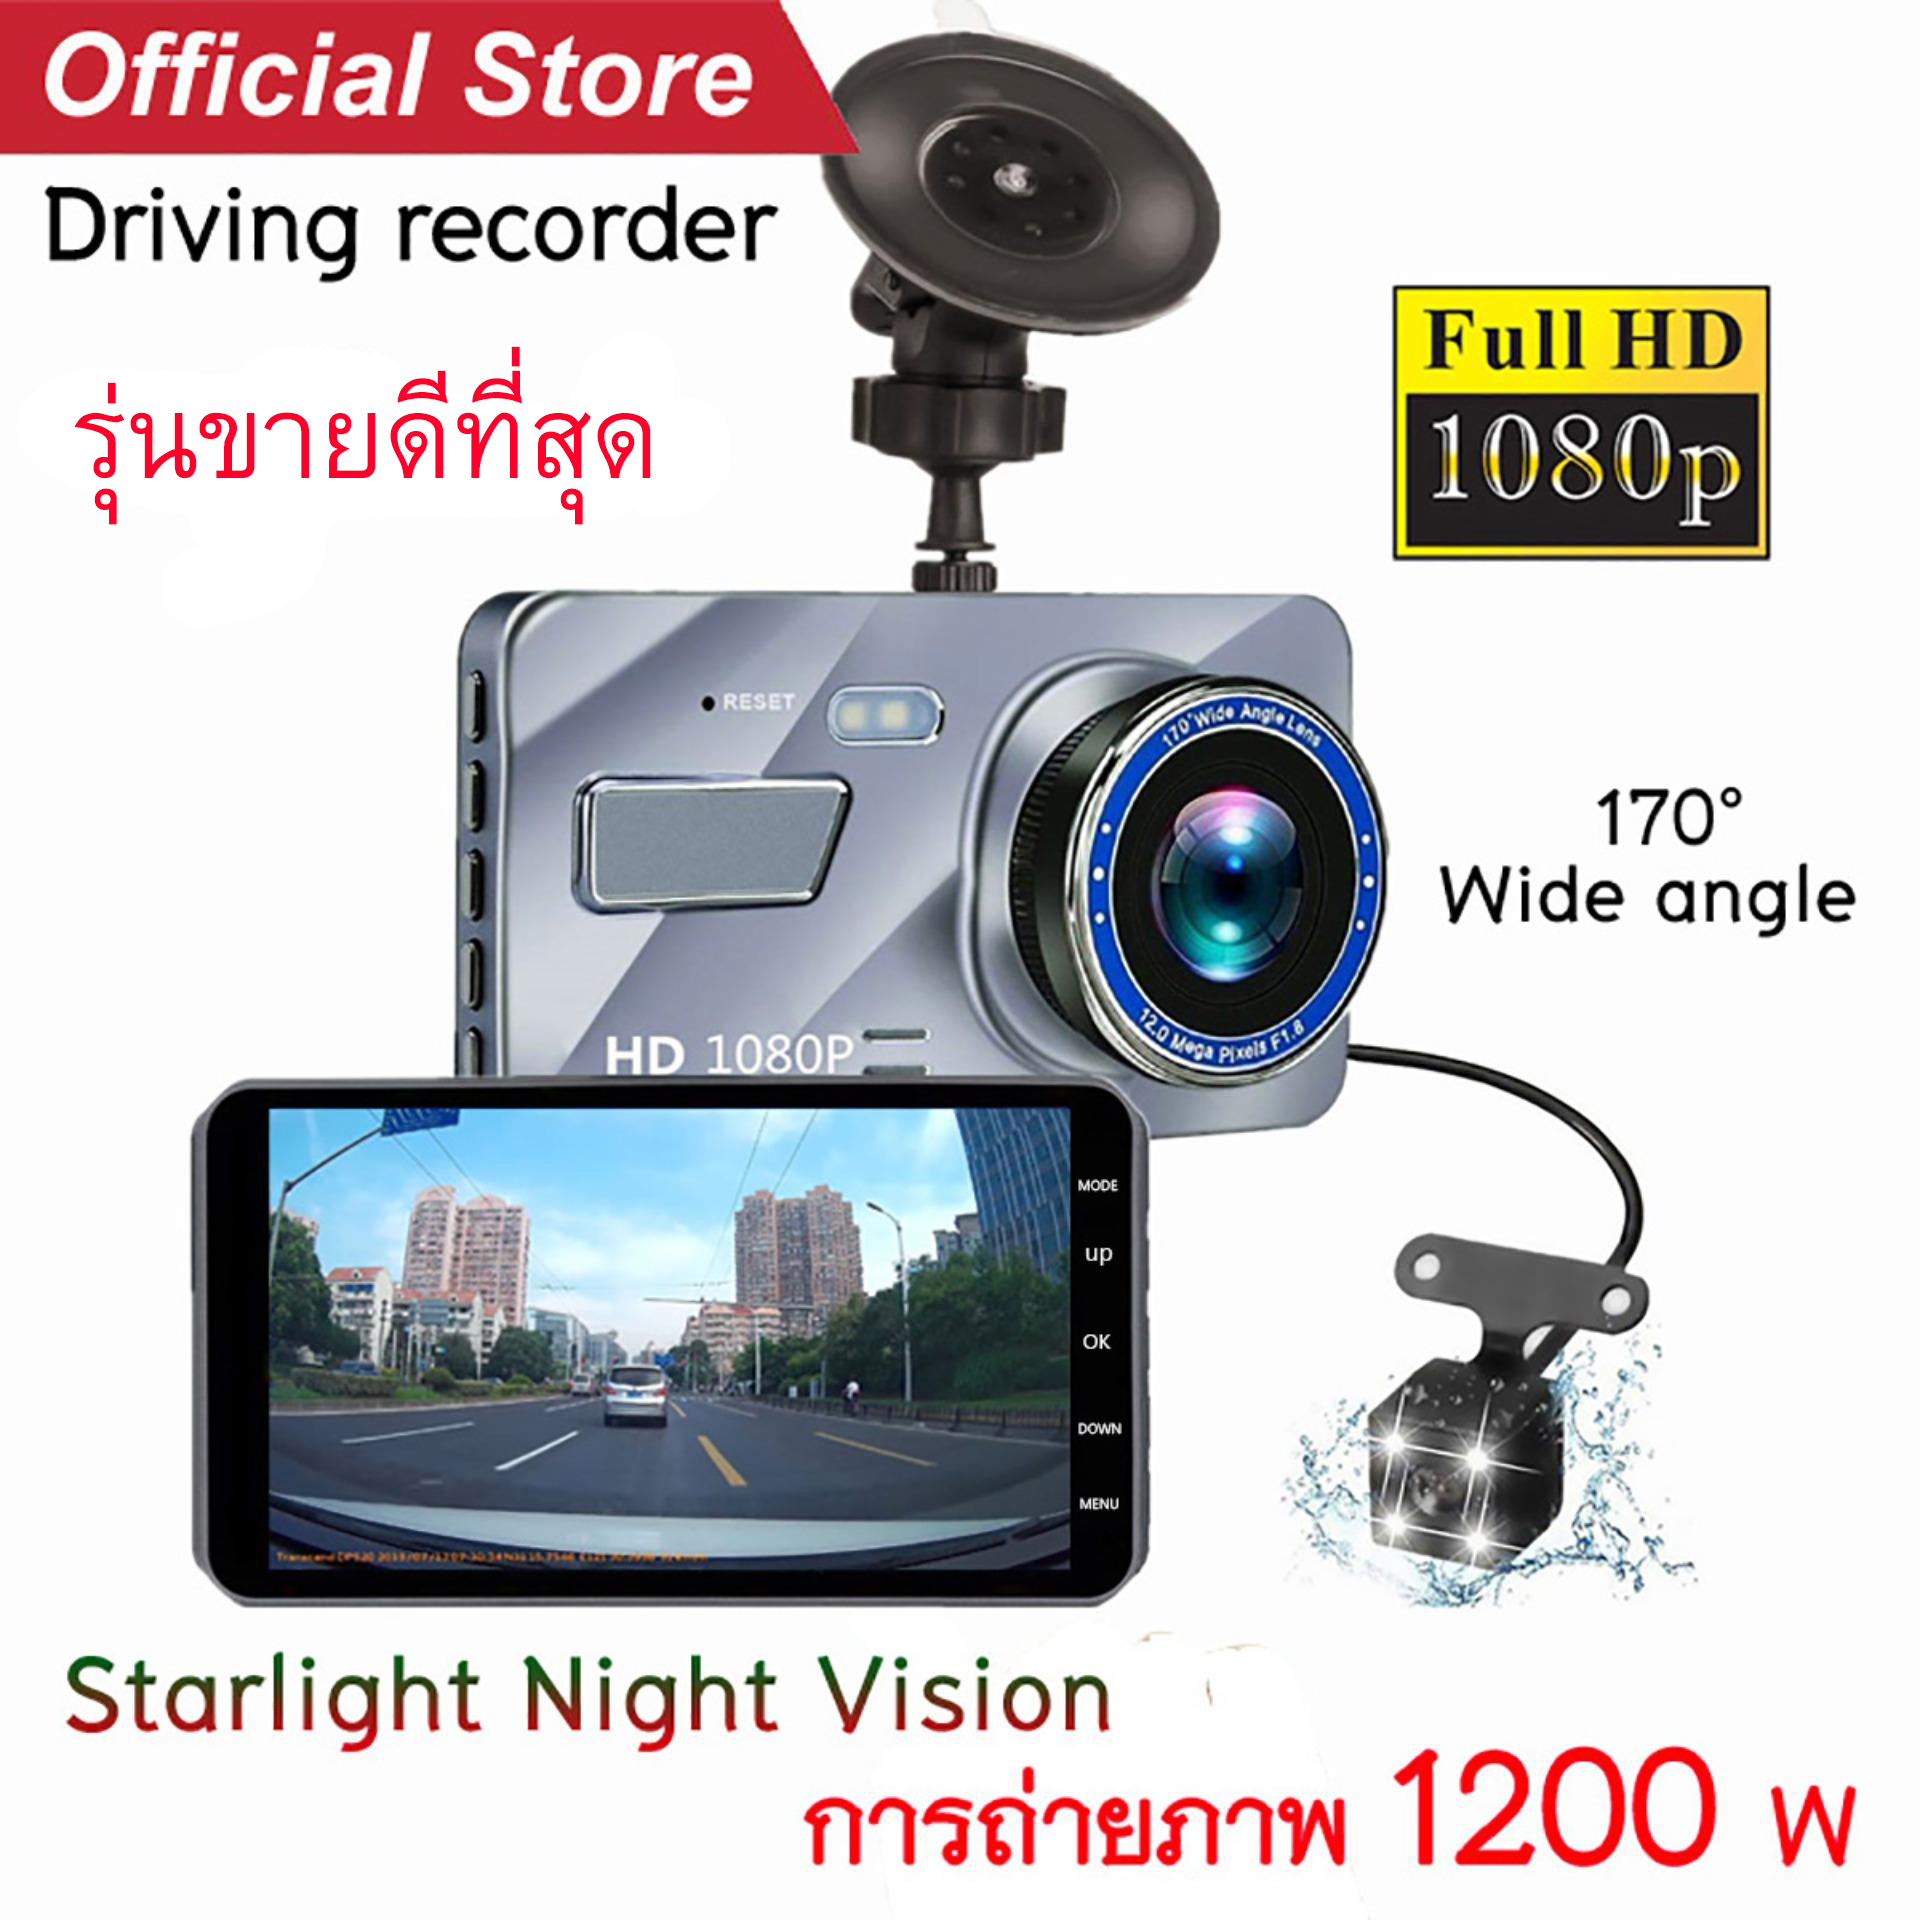 กล้องติดรถยนต์ เมนูภาษาไทย​ รับประกัน1ปี กล้องถอยหลัง 2กล้อง หน้า-หลัง WDR+HDR กล้องหน้าติดรถยนต์ Driving Recorder A10 Car Camera 1080P หน้าจอใหญ่ 4.0 (สีเงิน)